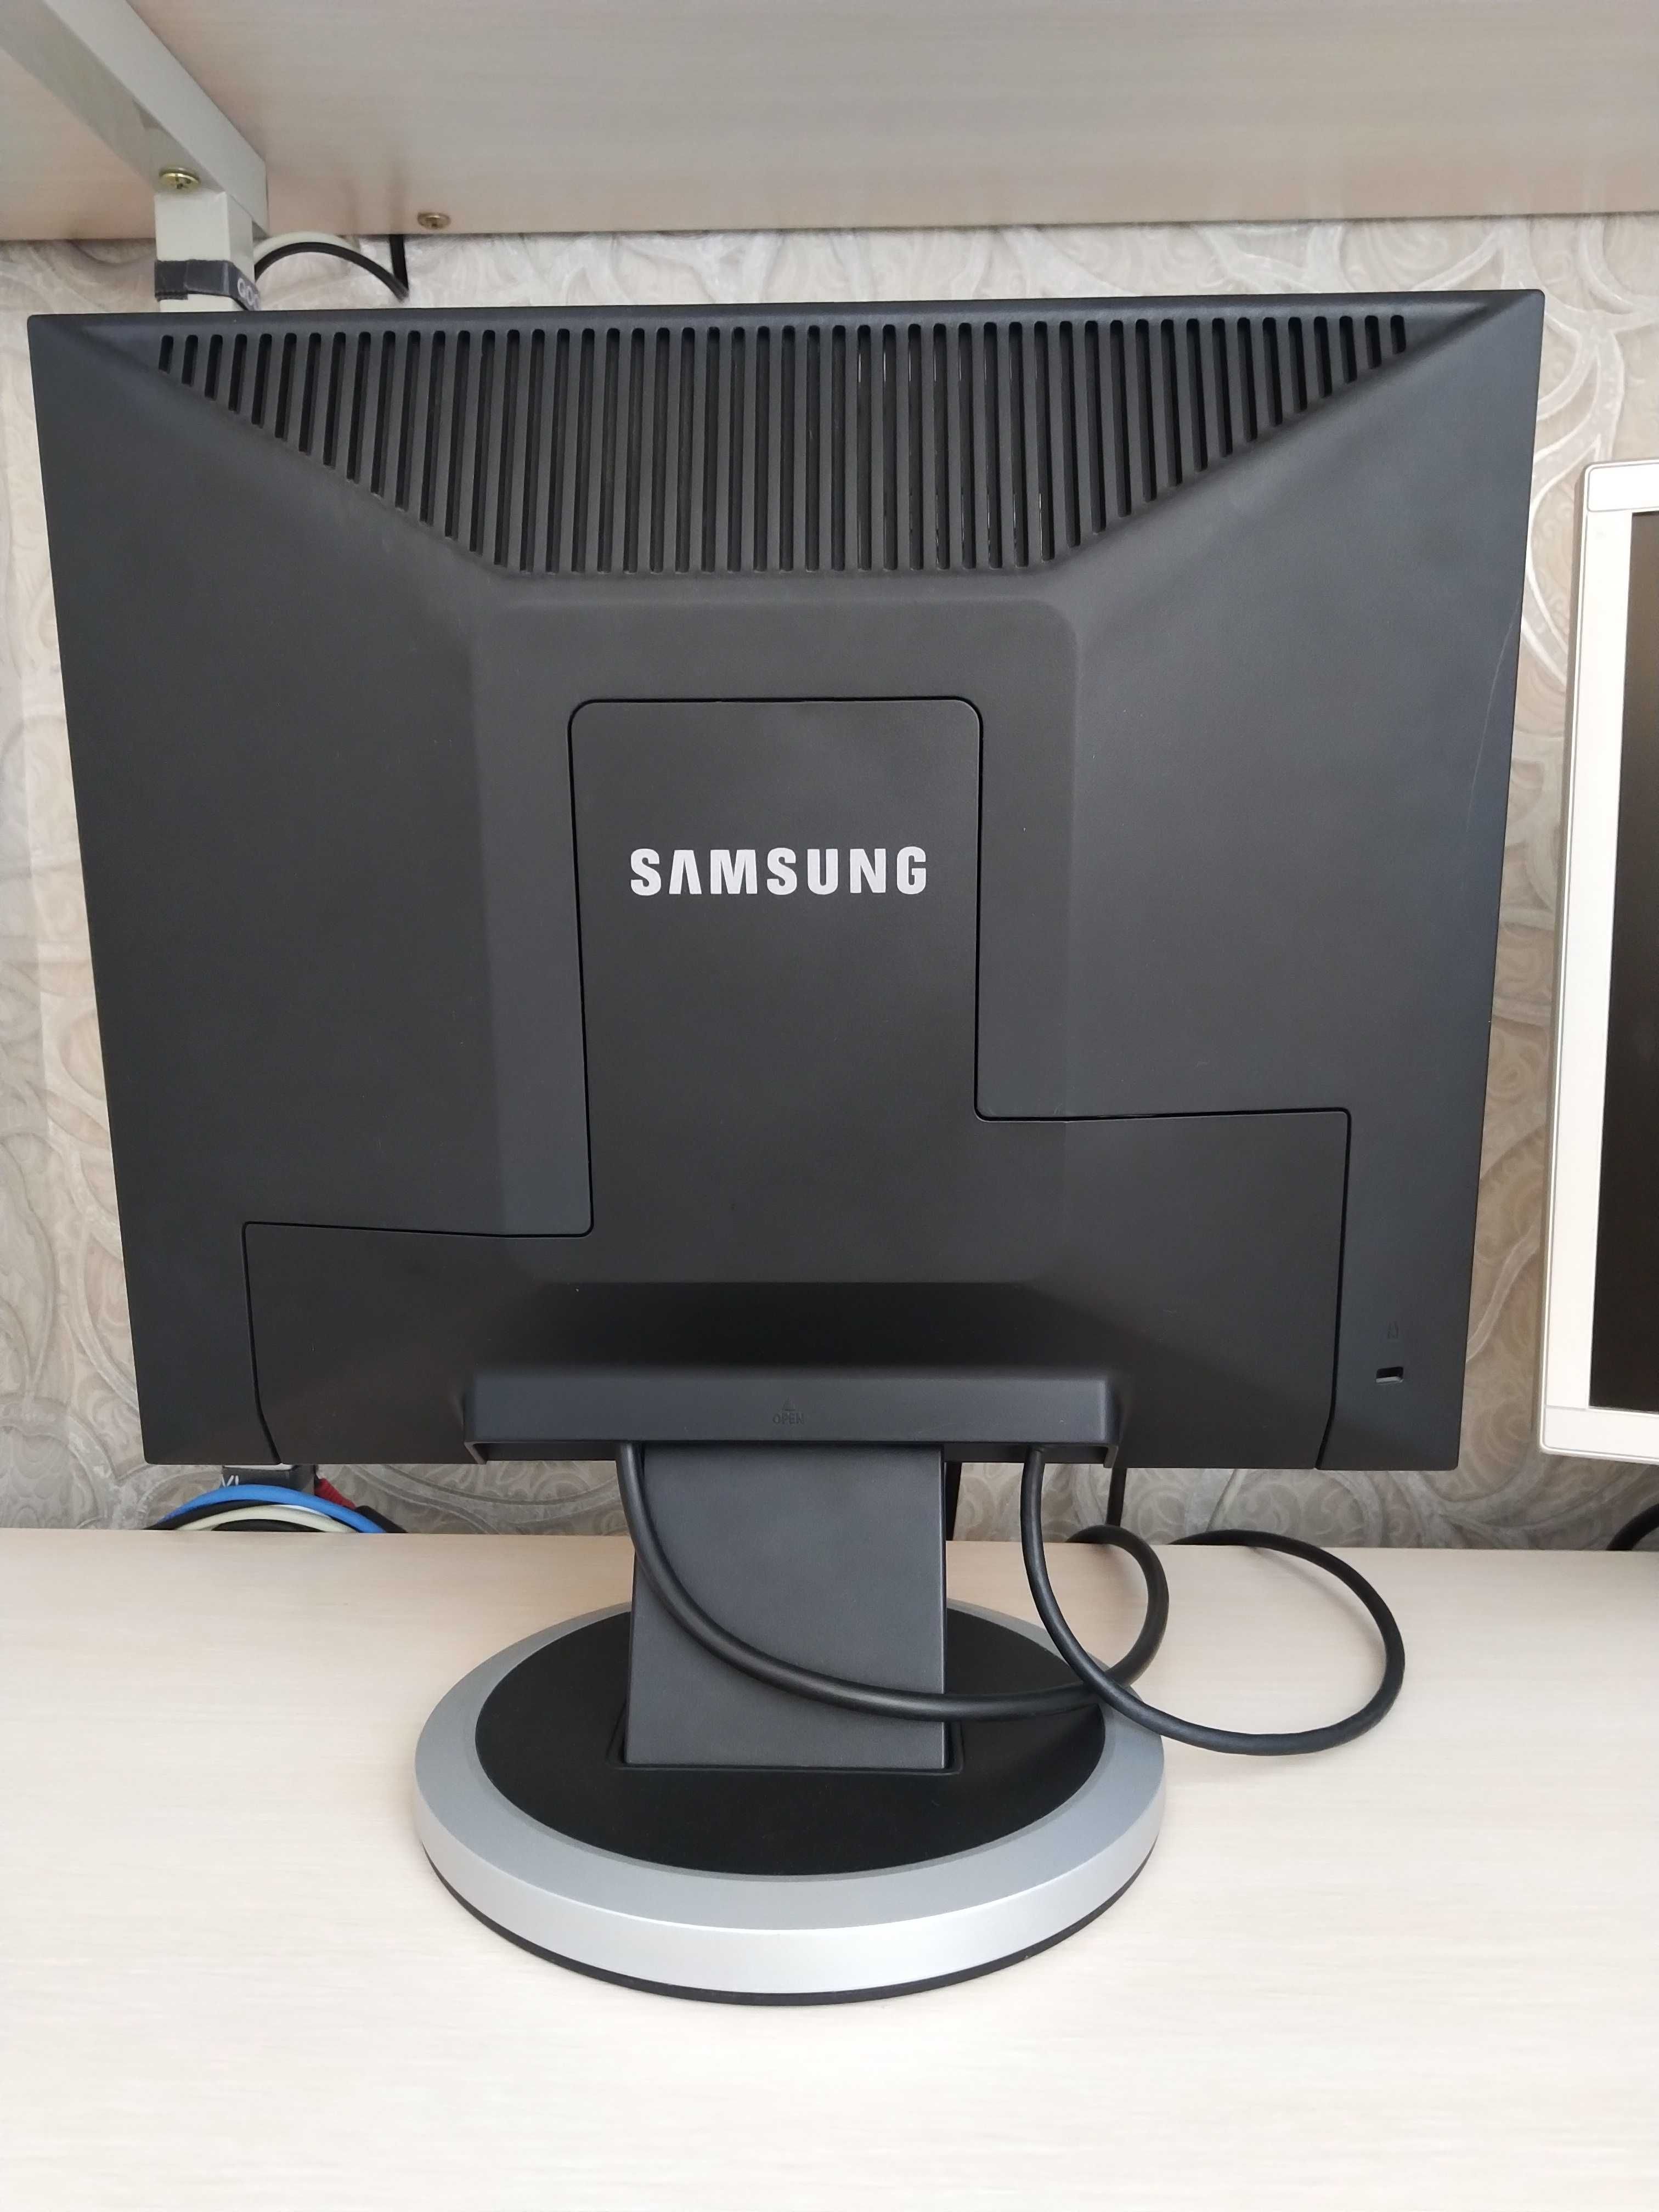 Монітор Samsung SyncMaster 740n. Робочій стан без битих пікселів.